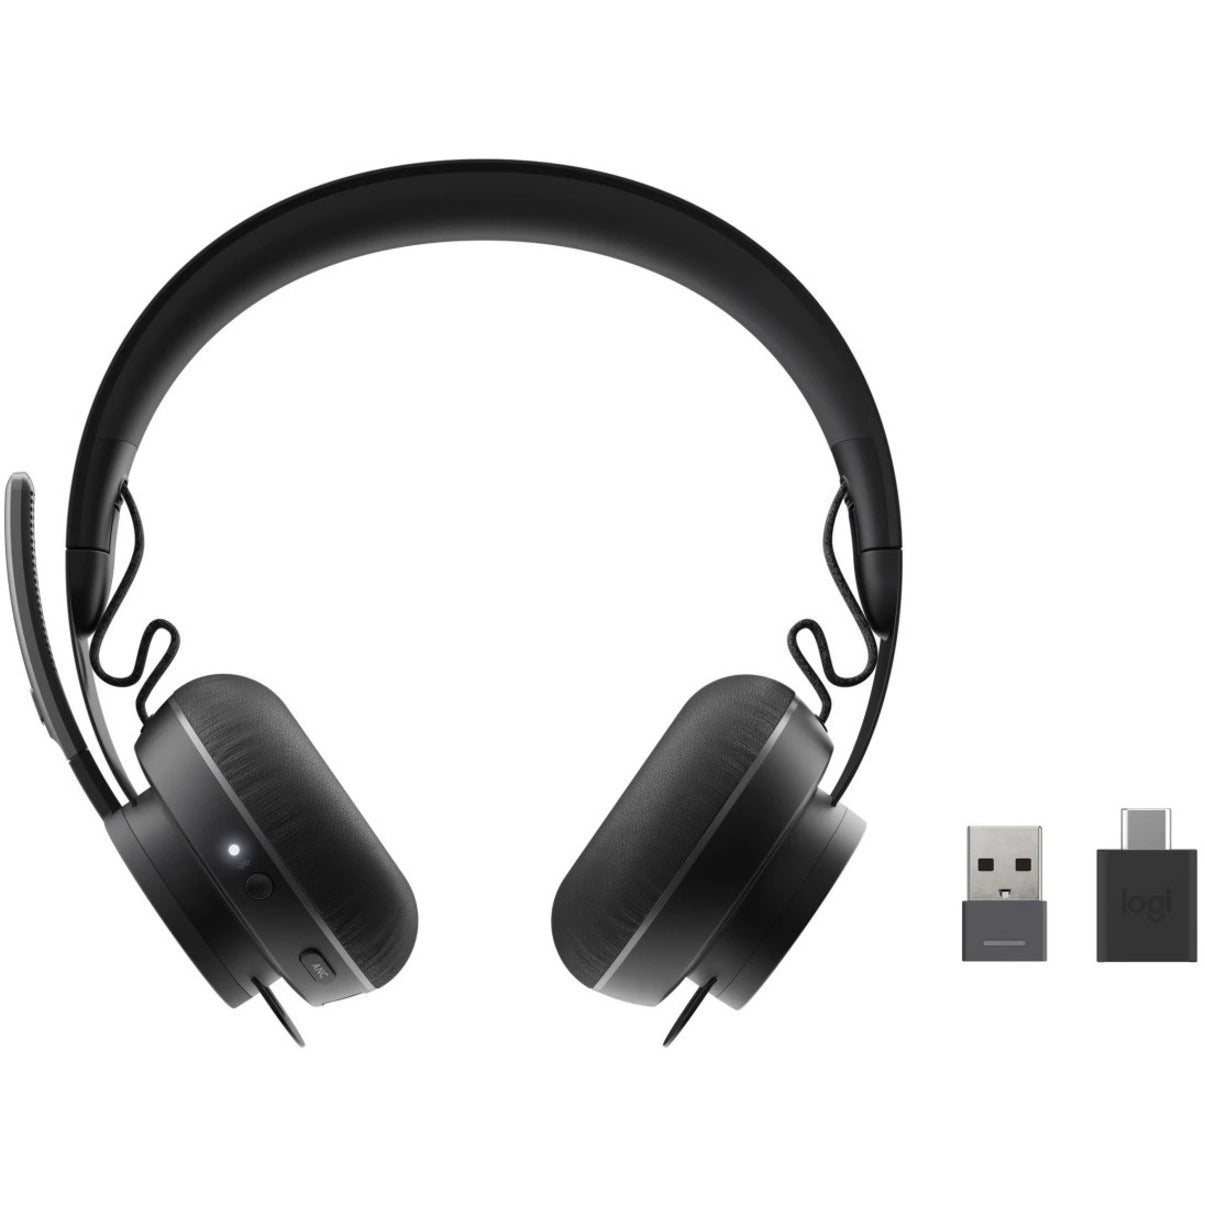 Logitech 981-000858 Zone Wireless Plus Headset, Noise Cancelling, Stereo, Wireless Bluetooth, 2 Year Warranty